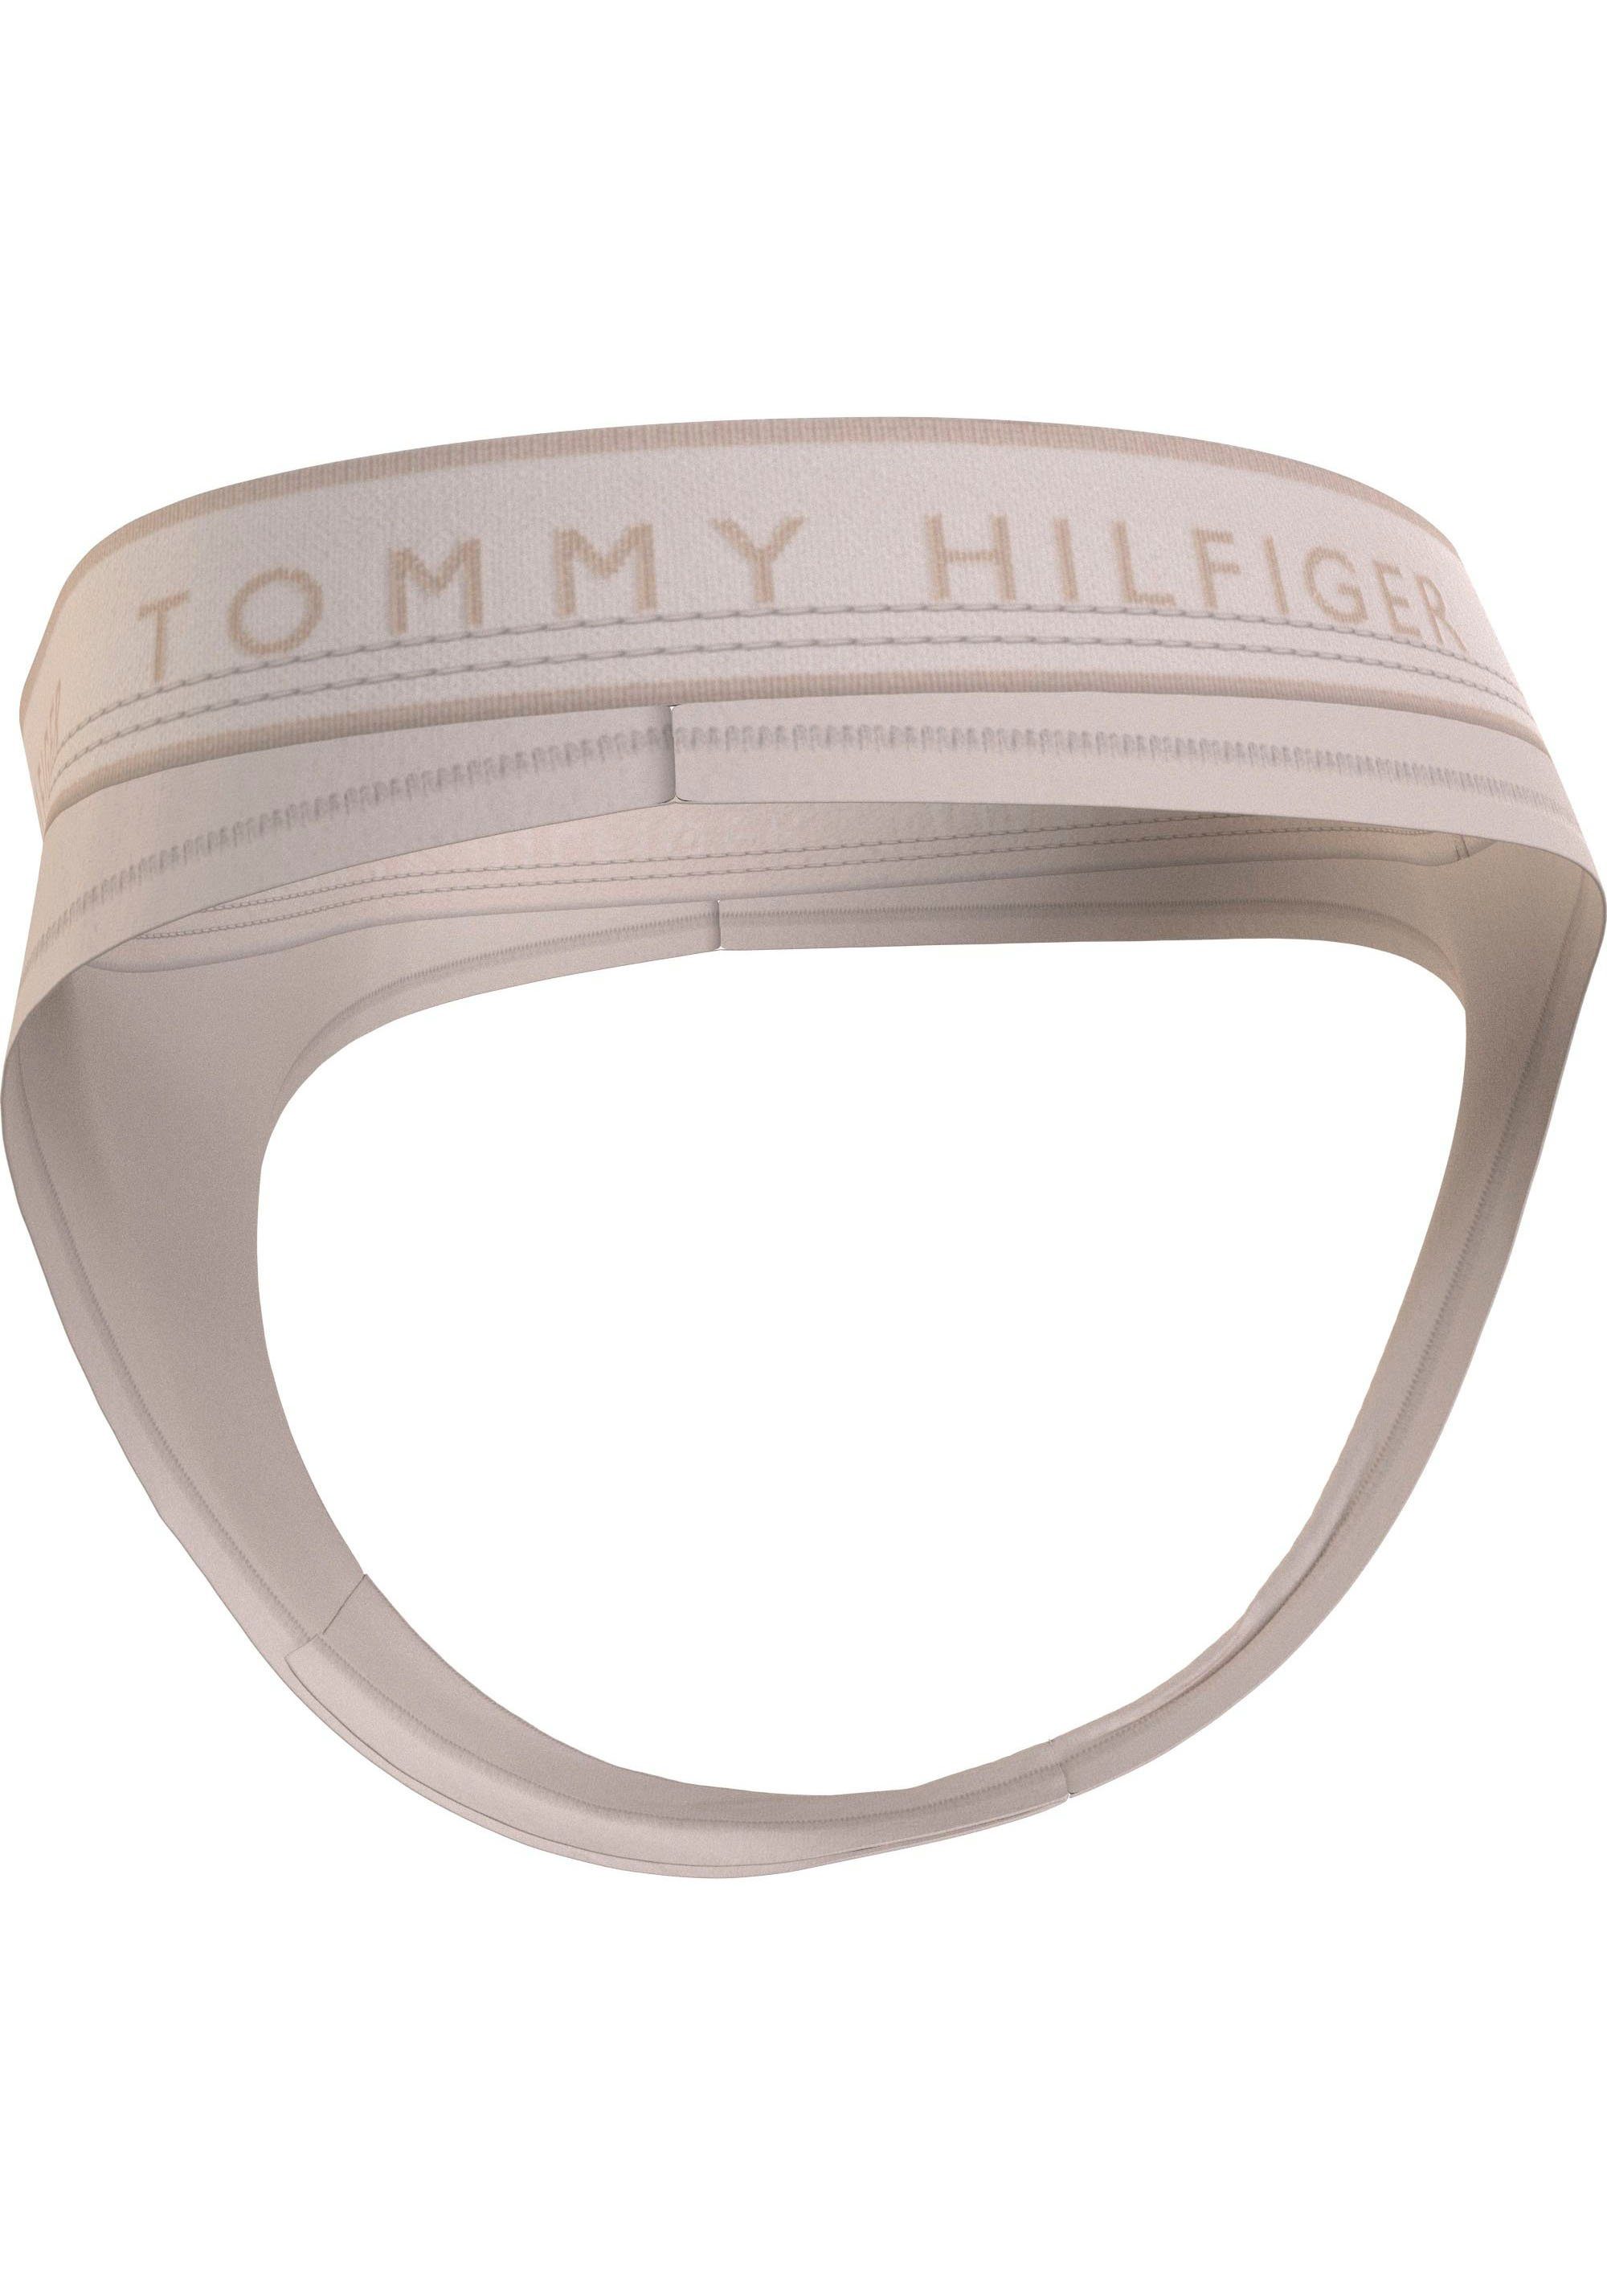 THONG (EXT Hilfiger Tommy SIZES) Underwear Chasmere_Creme Tommy mit Hilfiger String Logobund